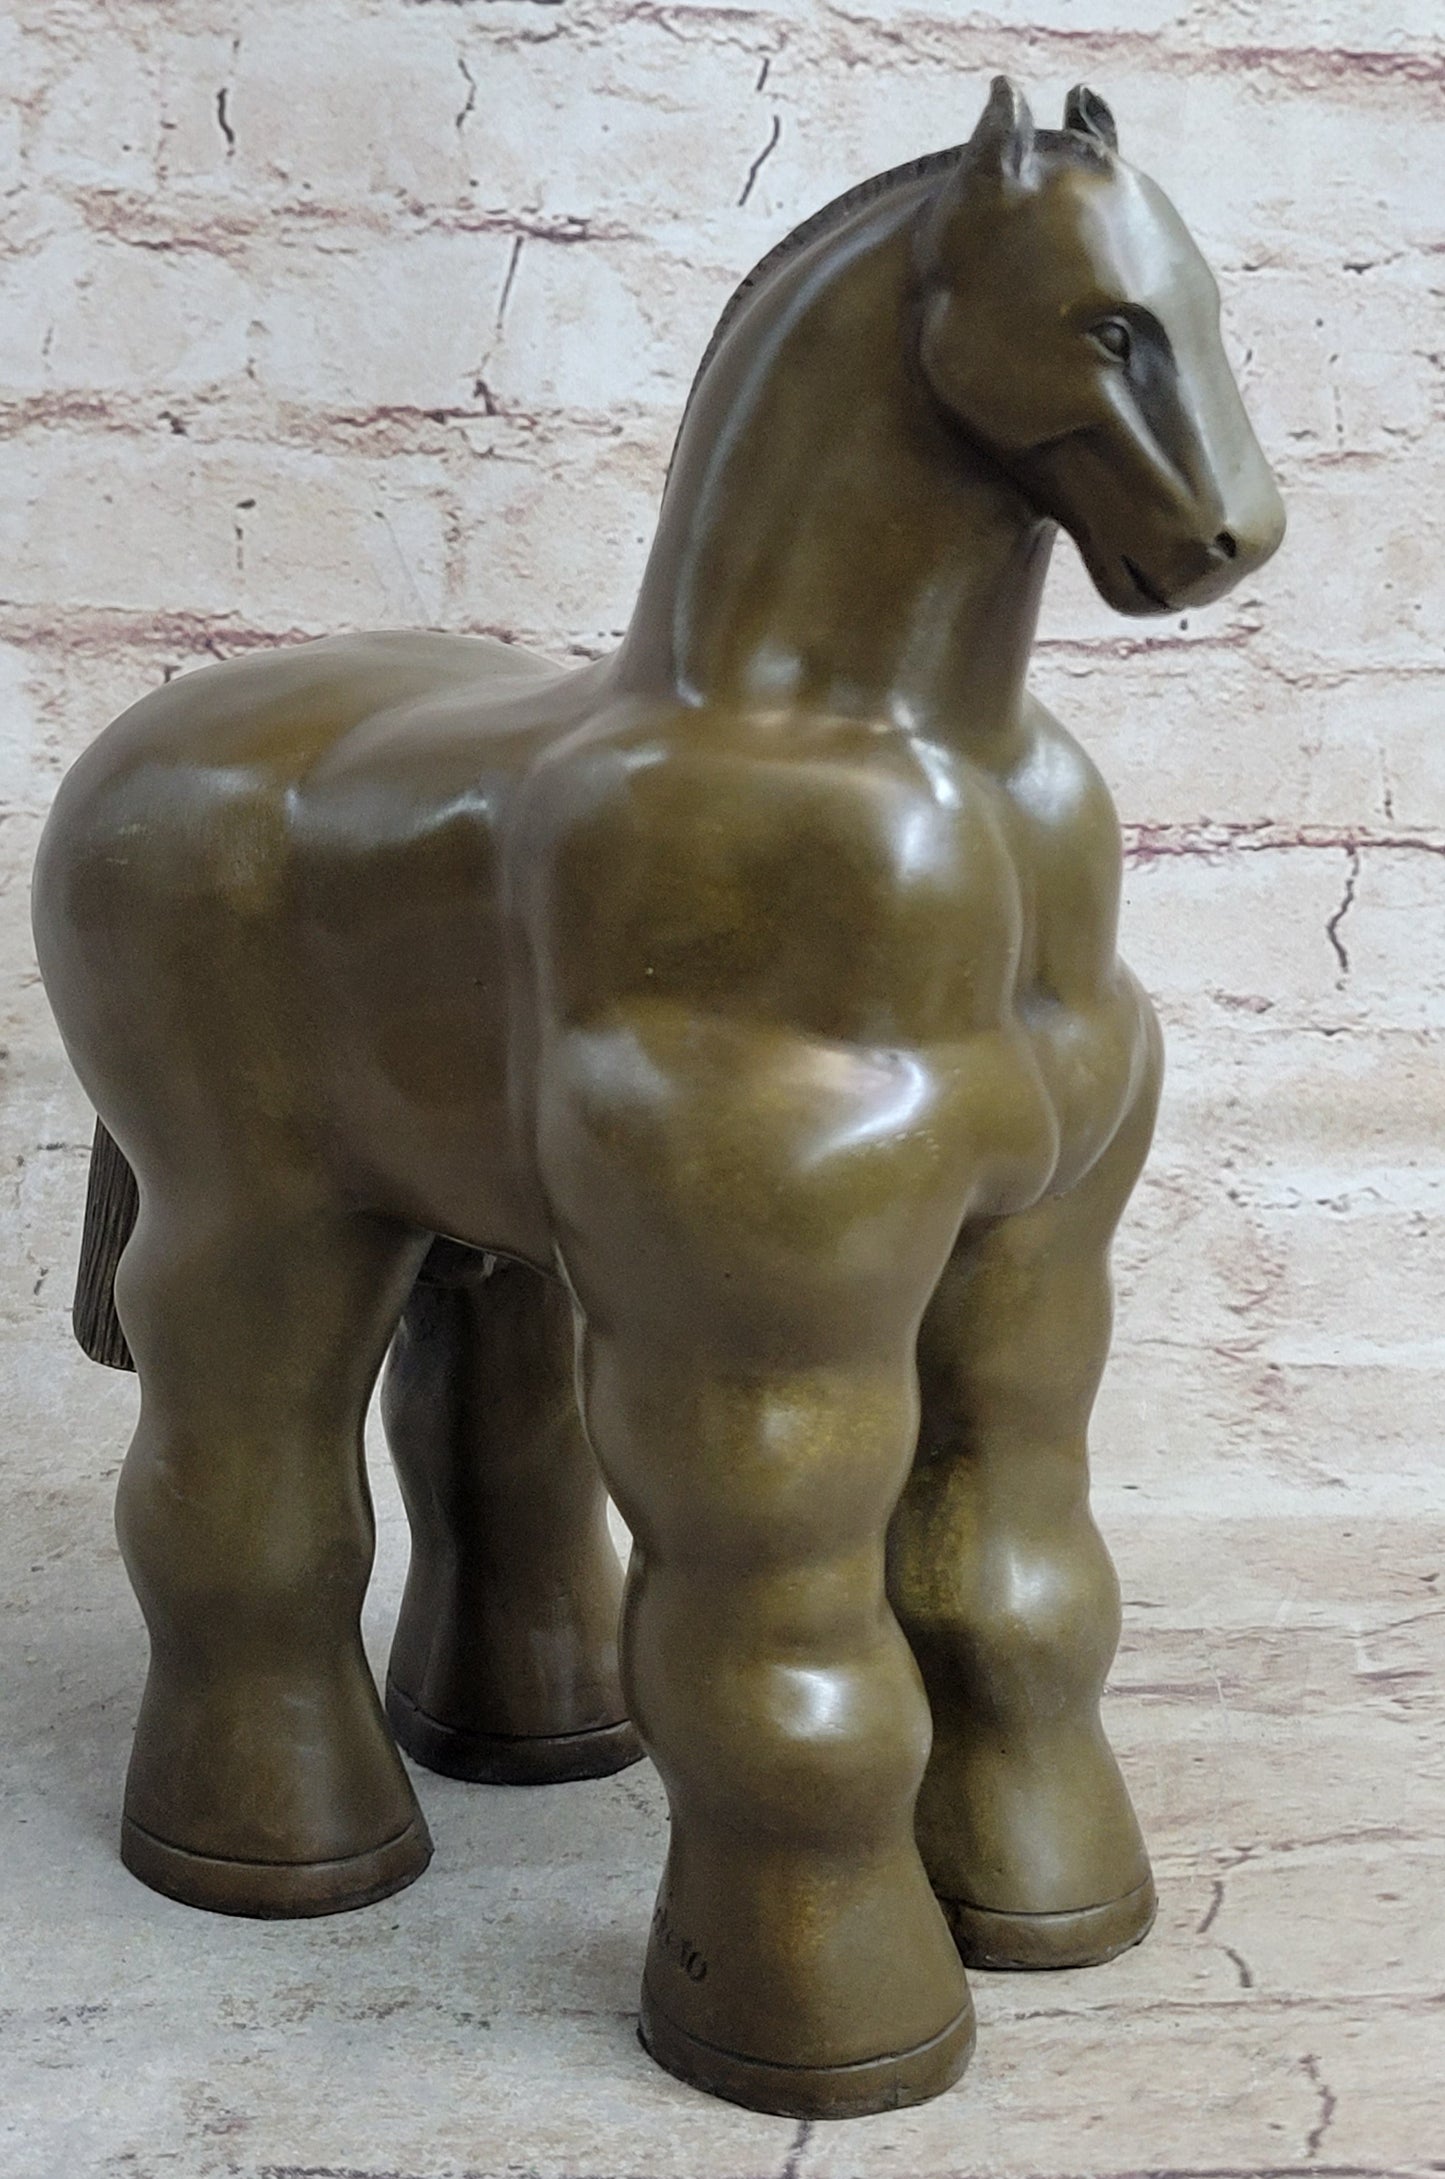 Modern Art Trojan Horse Sculpture by Botero